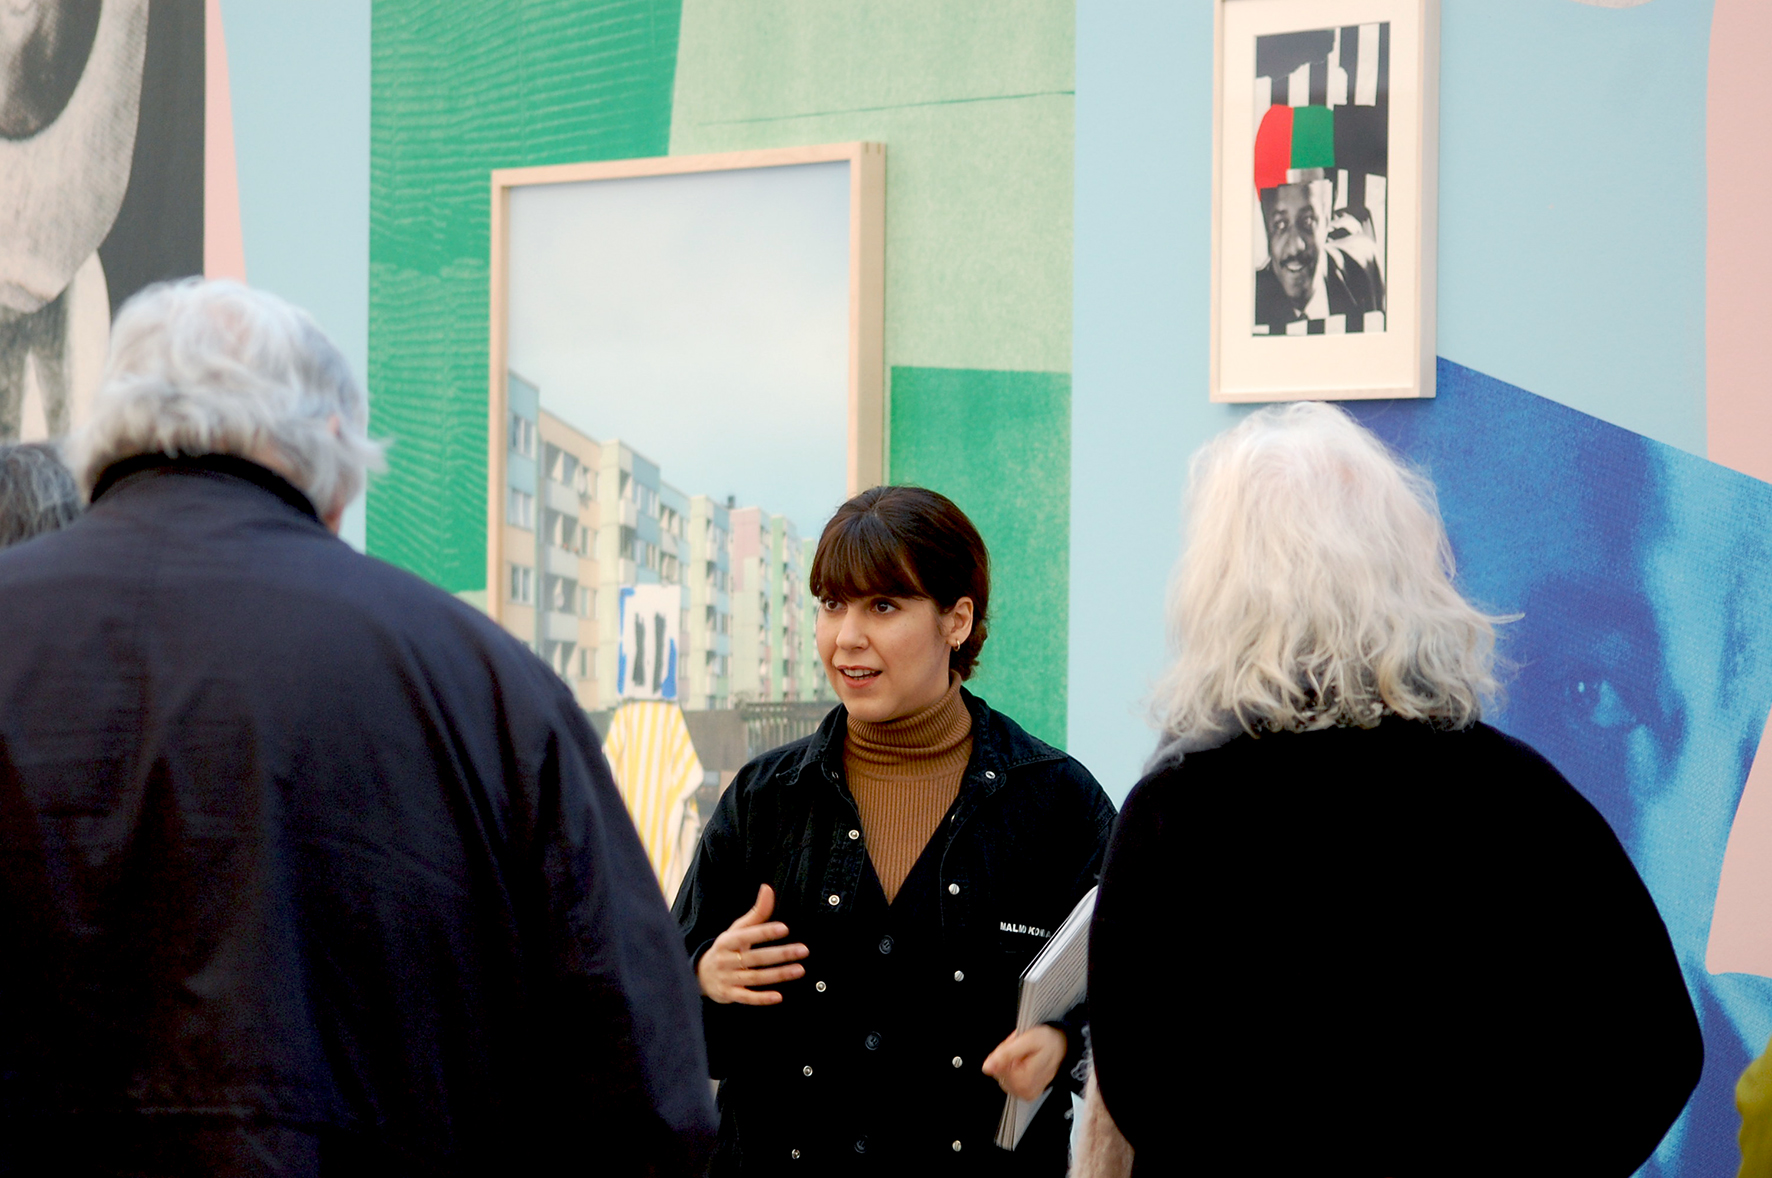 En av konsthallens guider berättar om en utställning. Utöver henne två besökare avporträtterade med ryggen mot kameran.